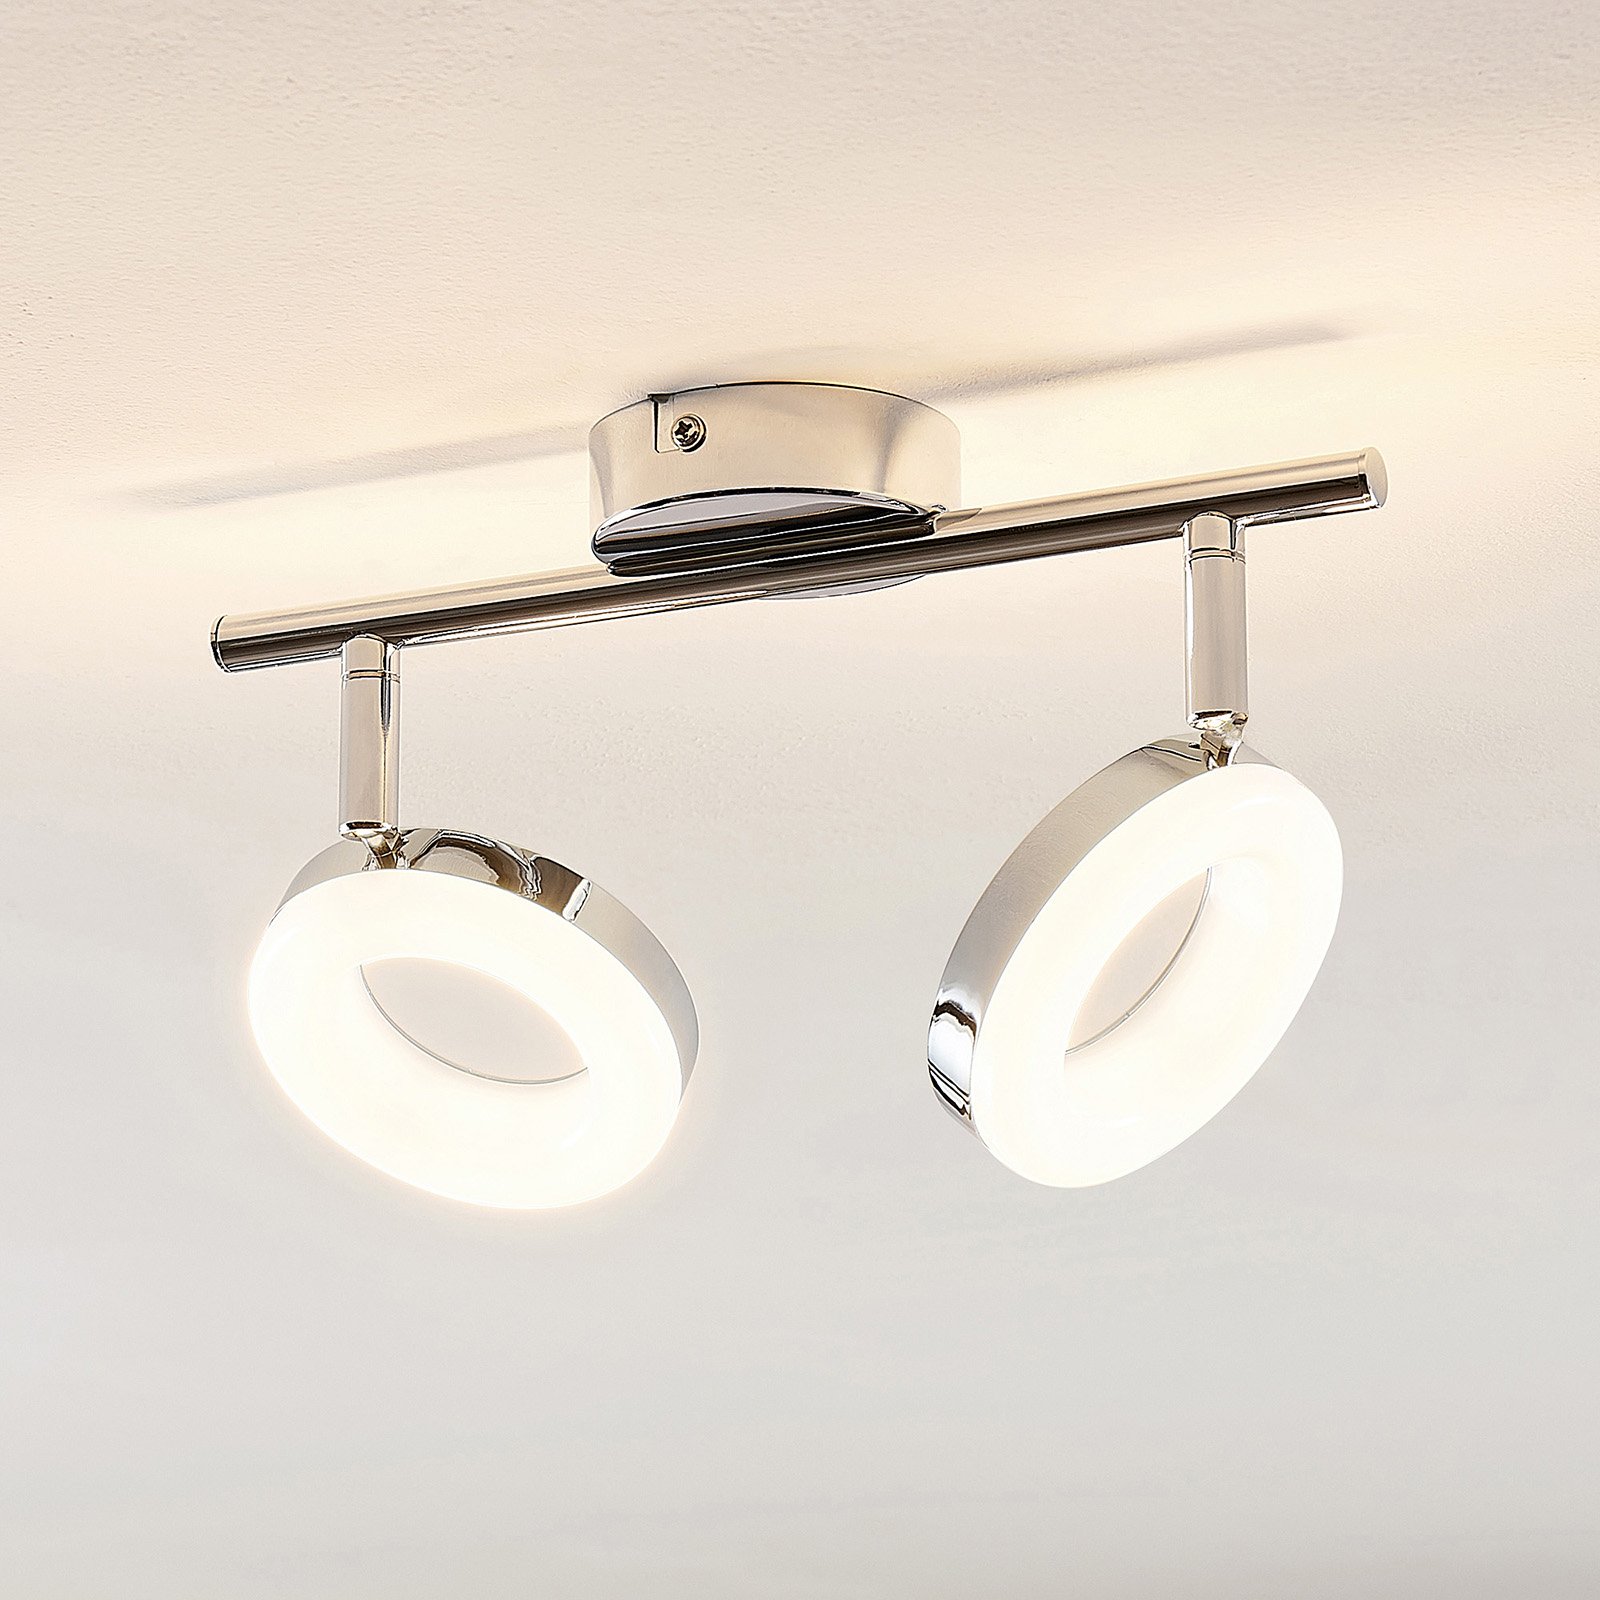 ELC Tioklia plafonnier LED chromé à 2 lampes